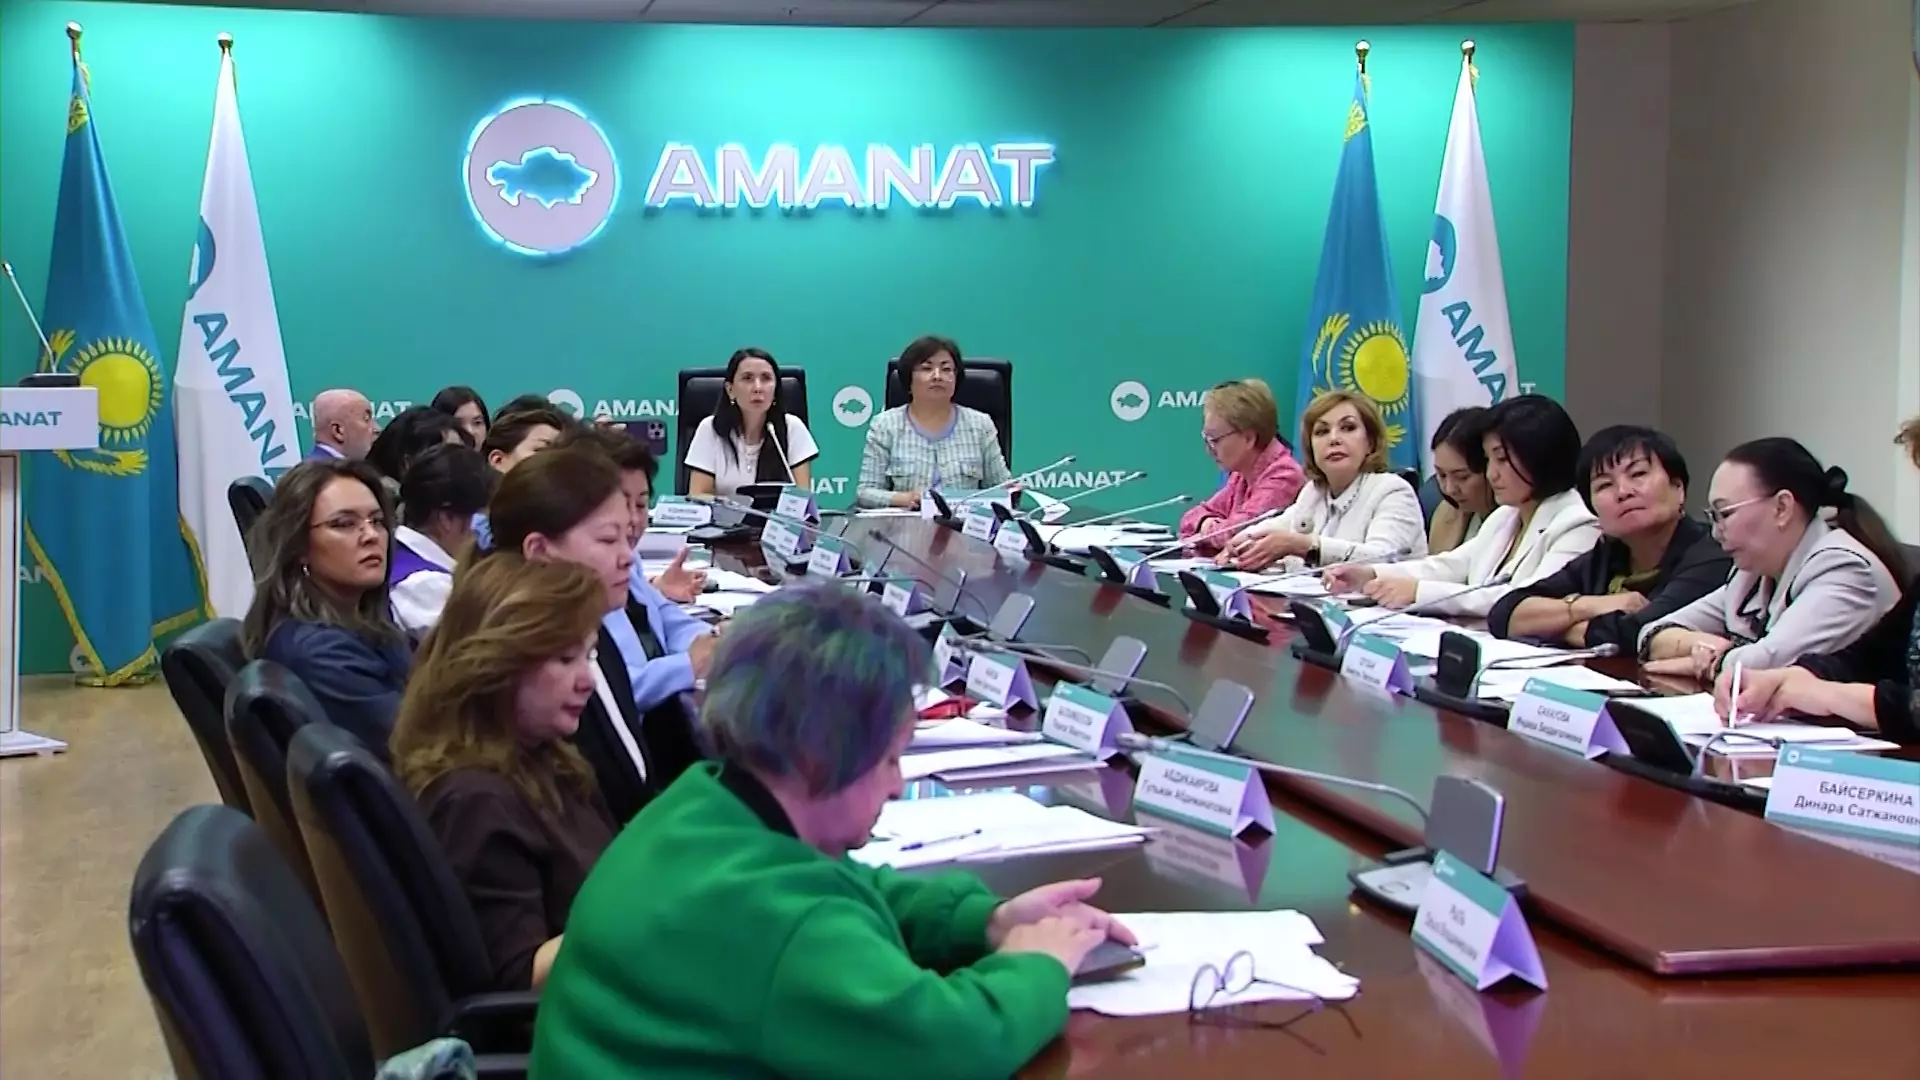 Изображения мальчиков - основные, а девочек - вспомогательные: гендерные вопросы обсудили в партии «AMANAT»